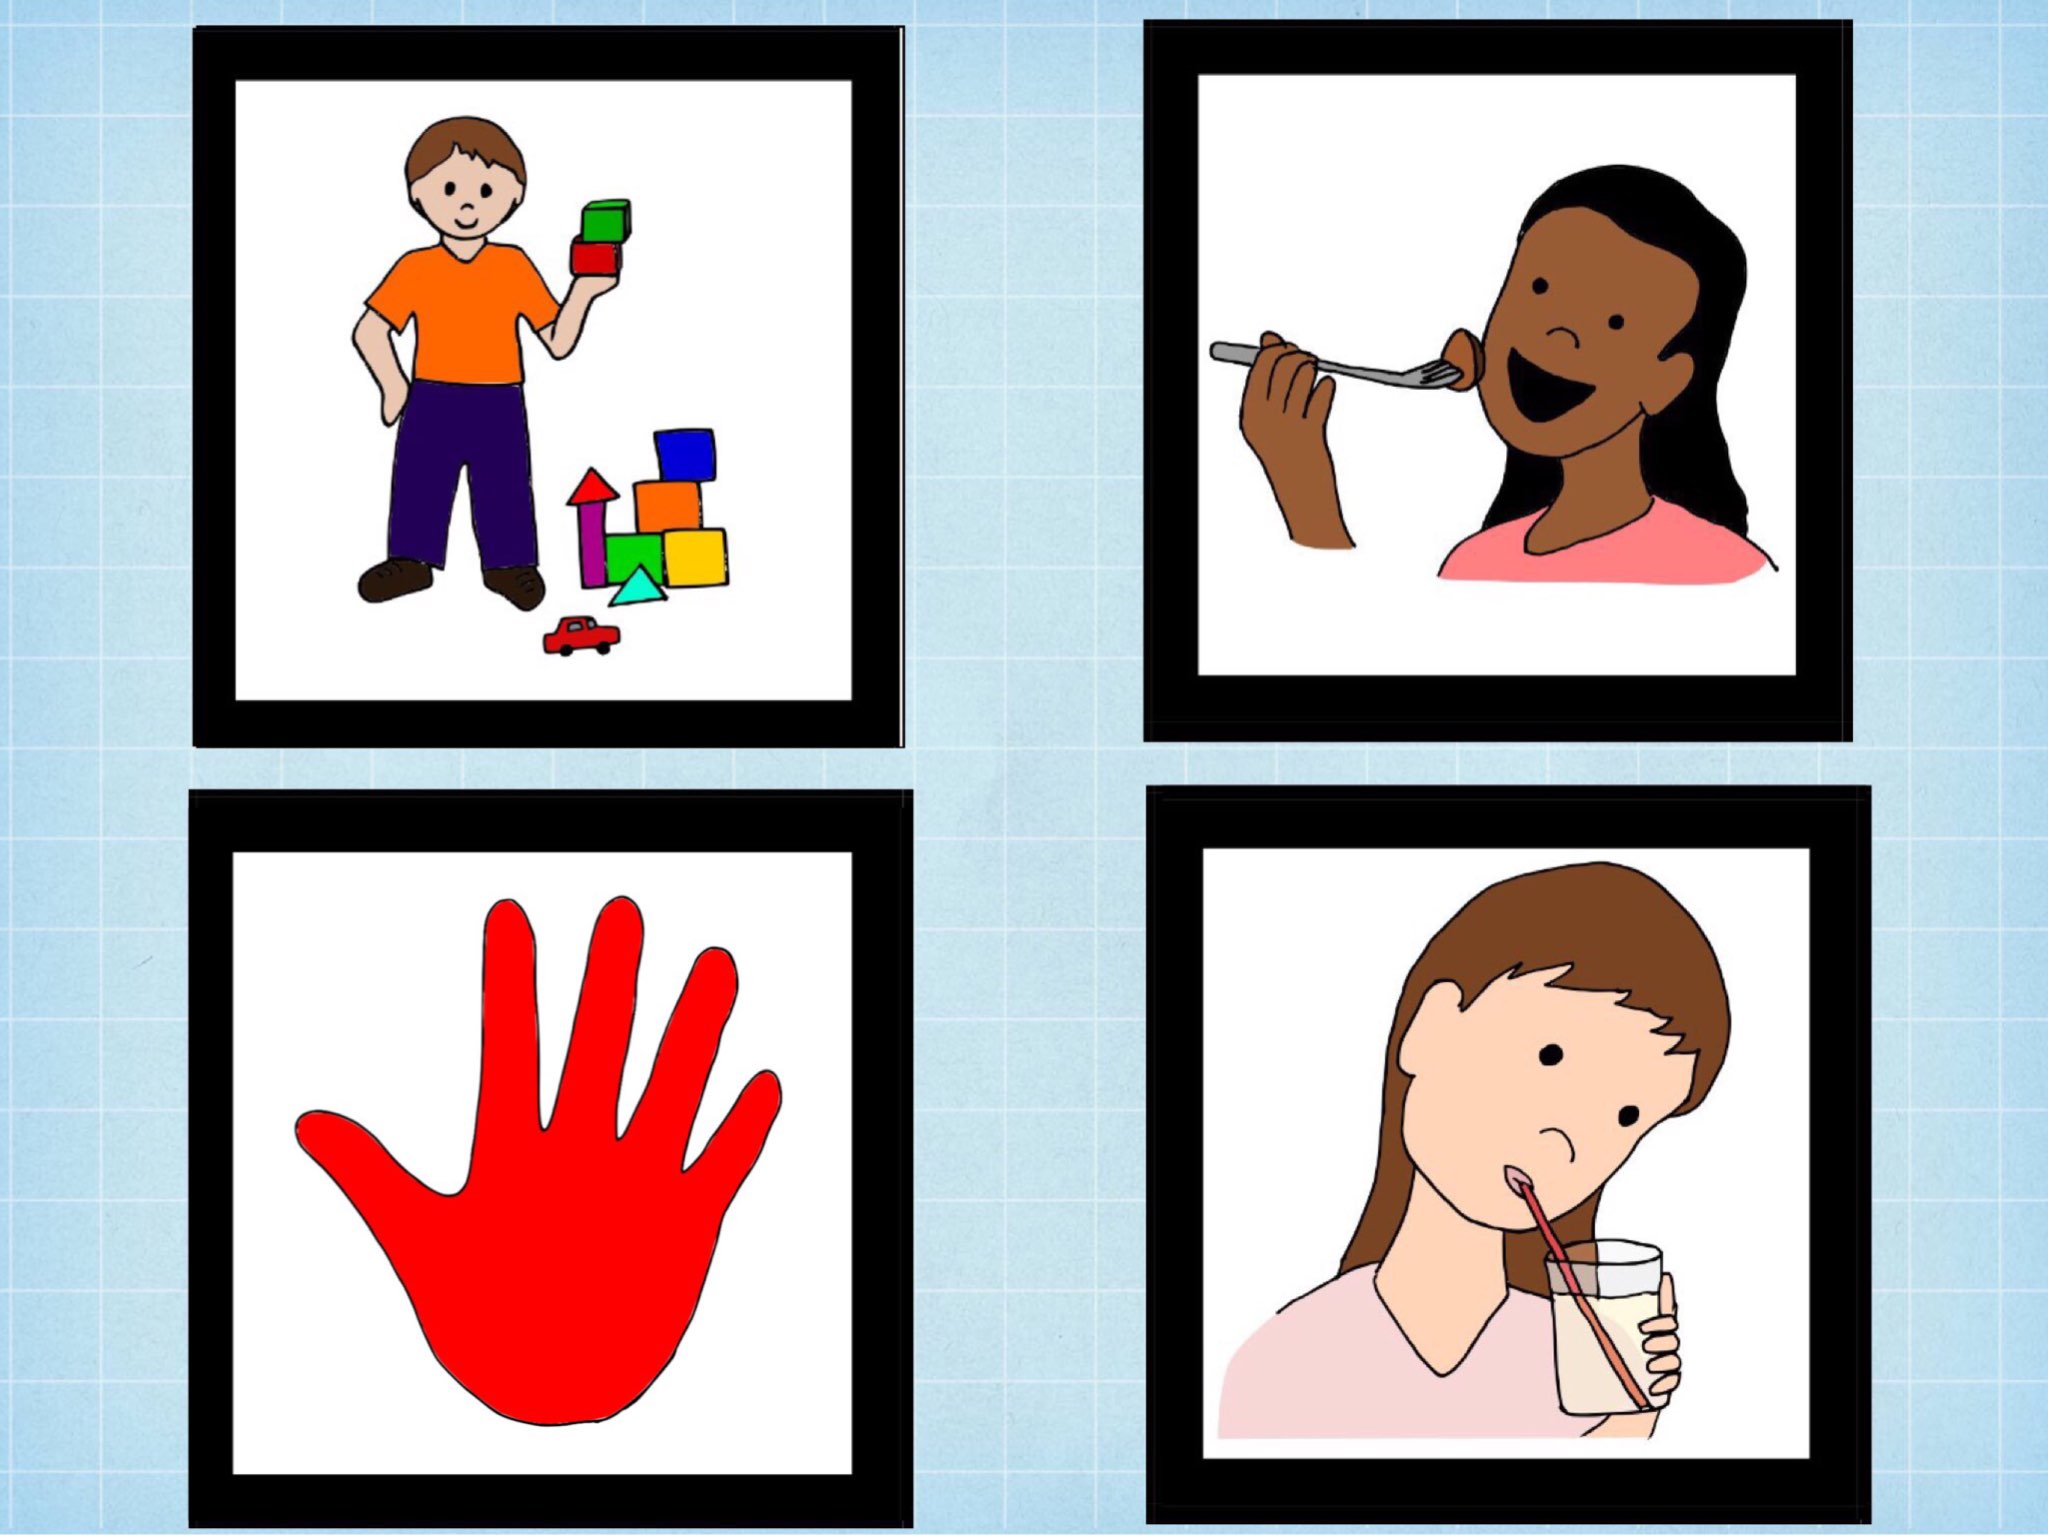 לוח תקשורת by בת אל קשבי - Educational Games for Kids on Ji Tap